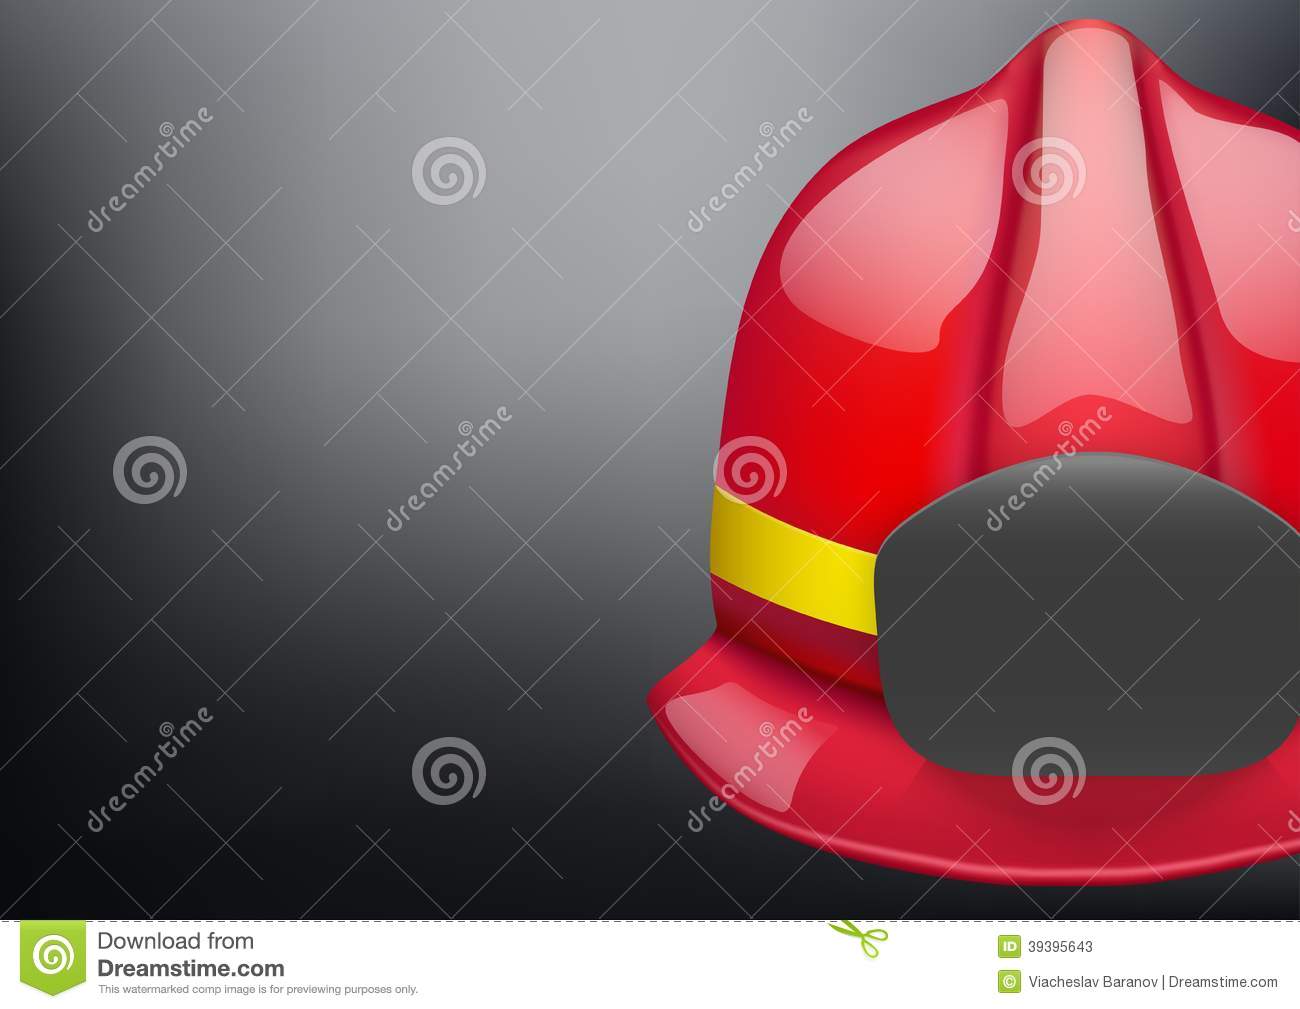 Red Fireman Helmet Vector Background Stock Vector   Image  39395643